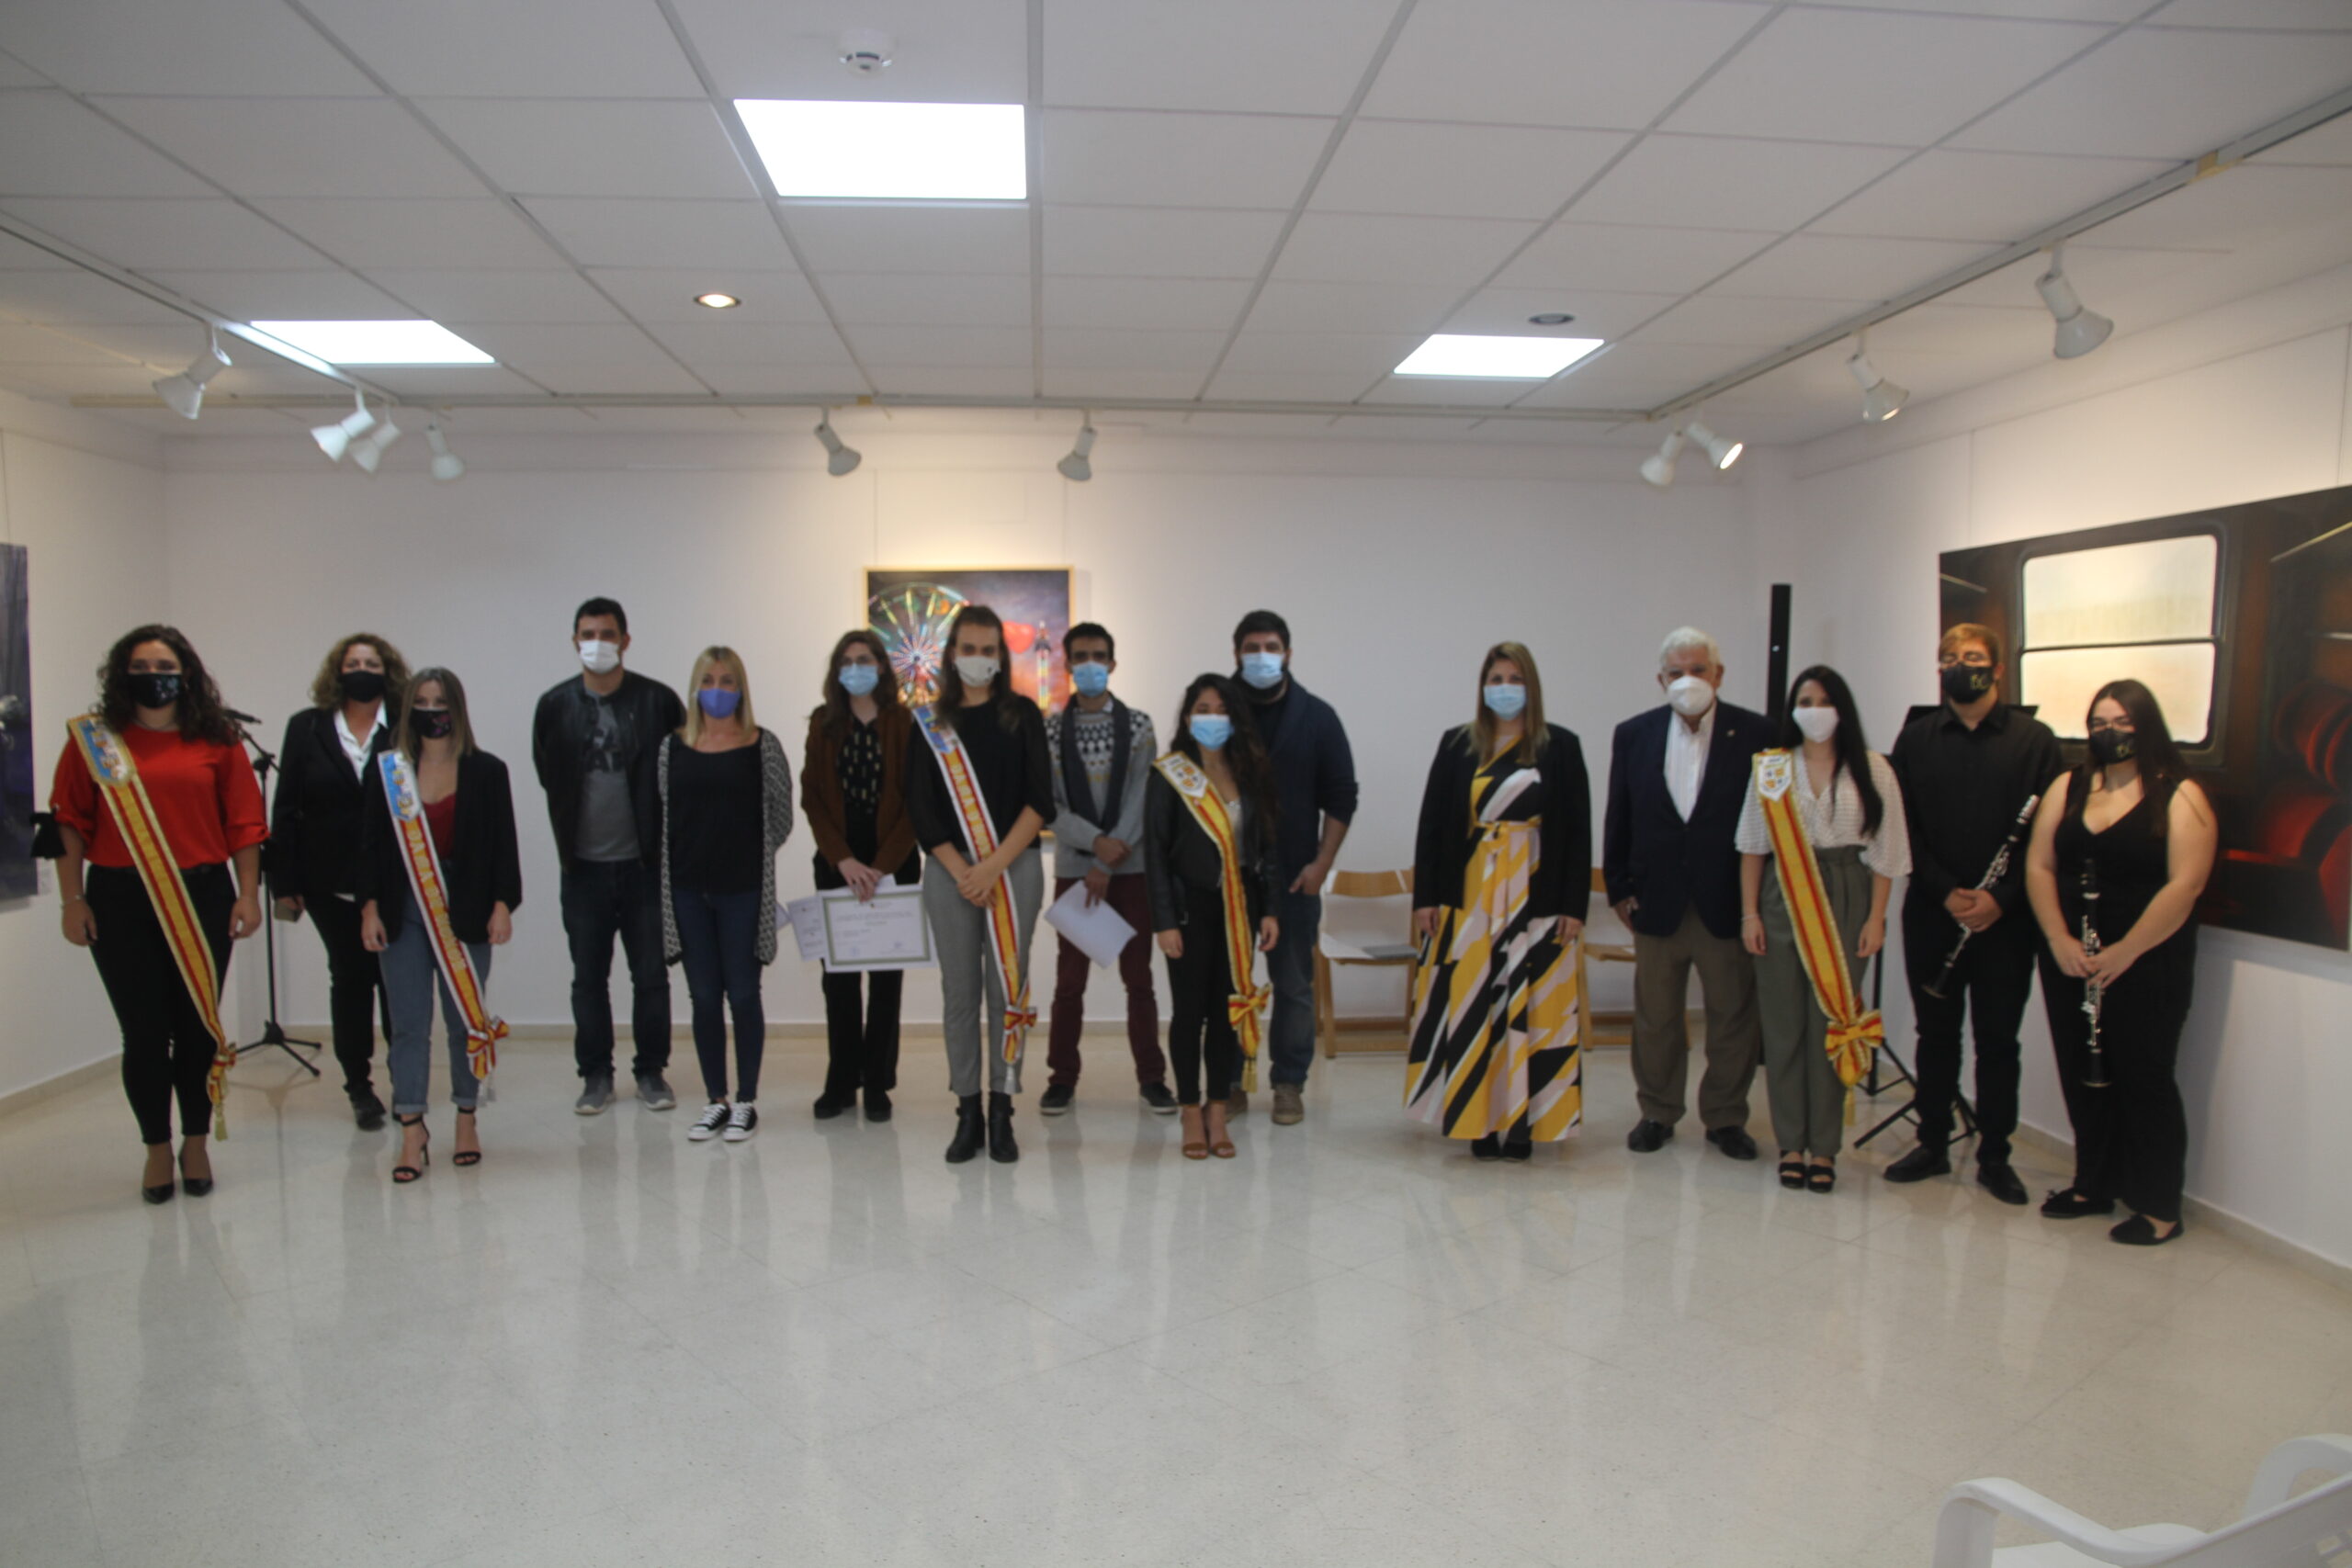 Ganadores, autoridades, representantes de las fiestas y miembros de la Sociedad Musical "La Paz" que intervinieron en el 53 Certamen de Pintura Vila de Sant Joan